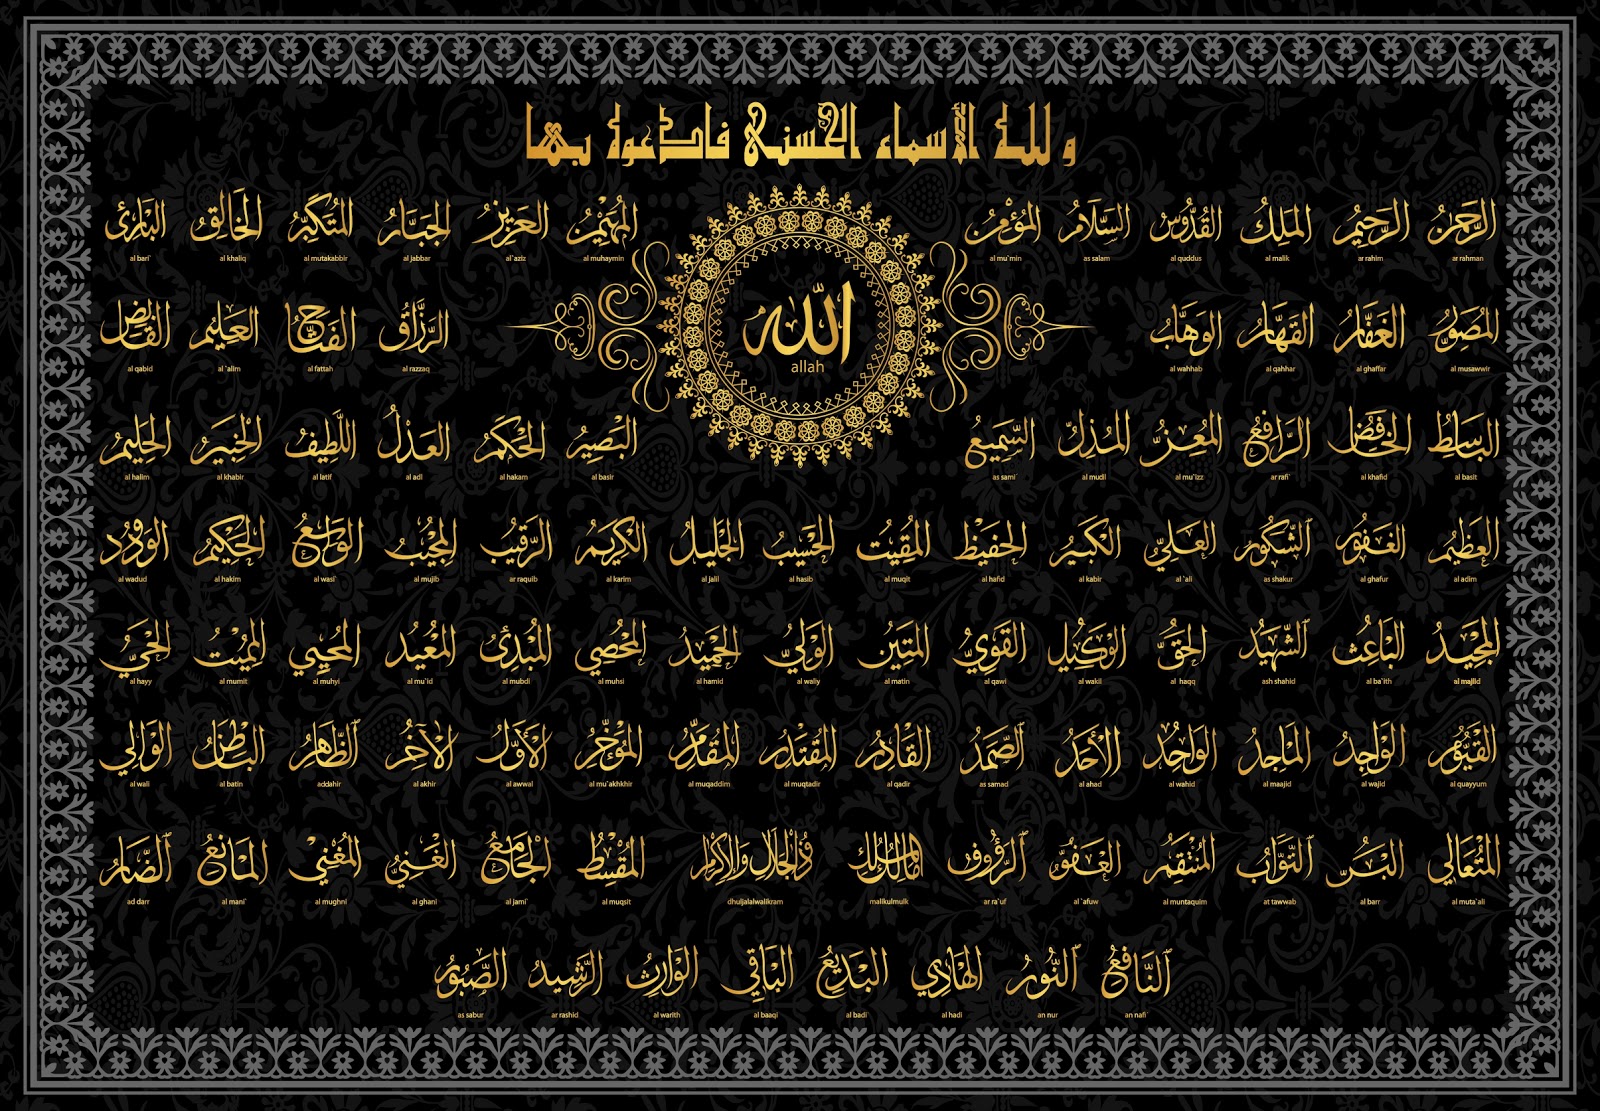 50+] 99 Names of Allah Wallpaper - WallpaperSafari